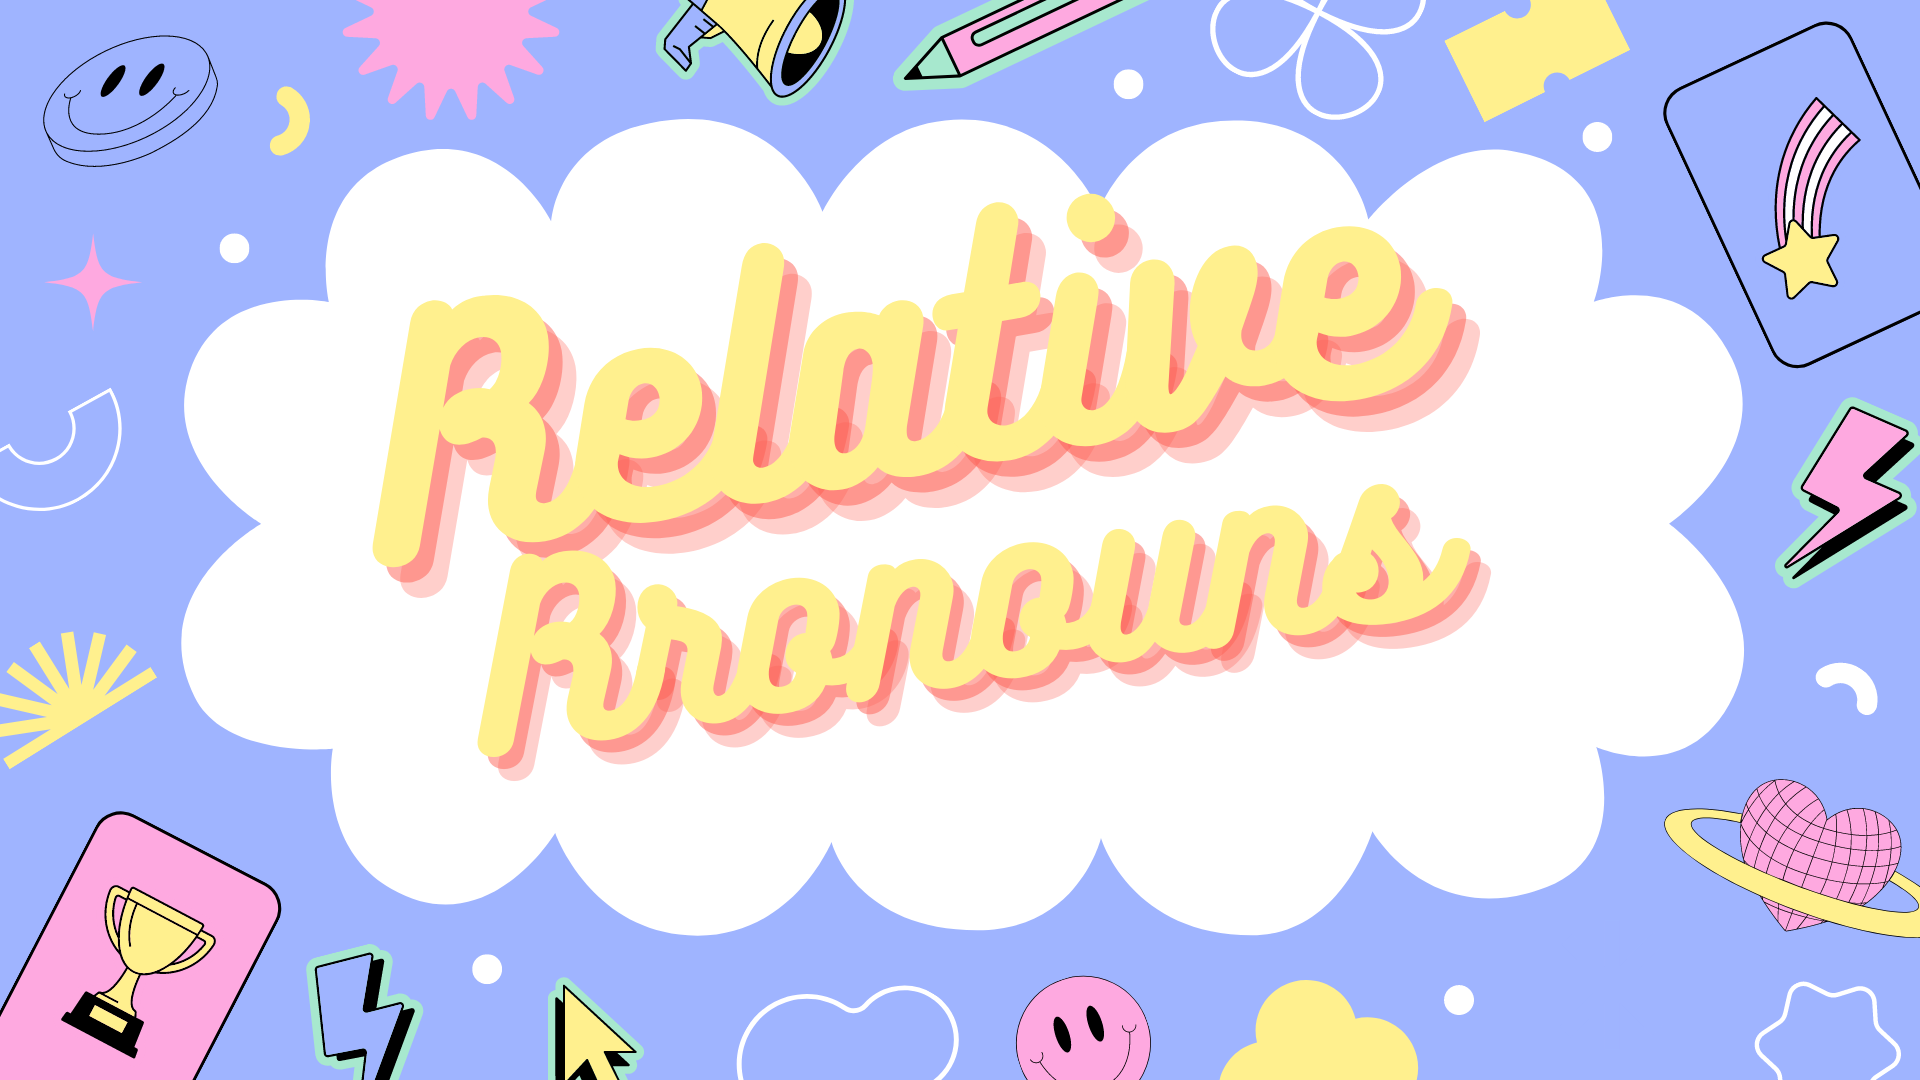 Pronouns - Year 8 - Quizizz